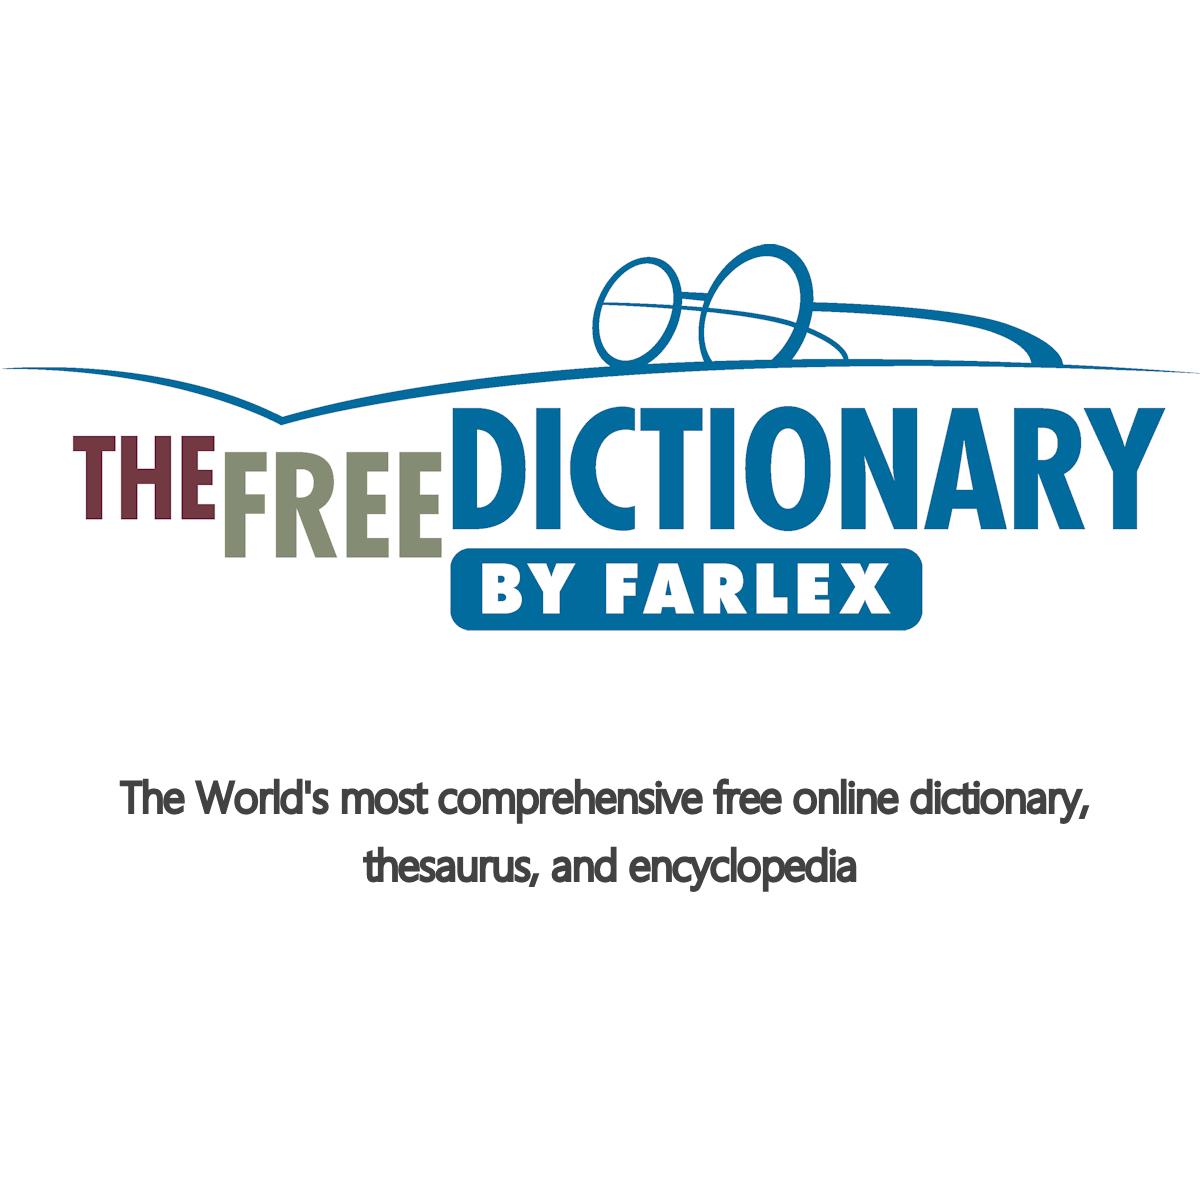 Free dictionaries